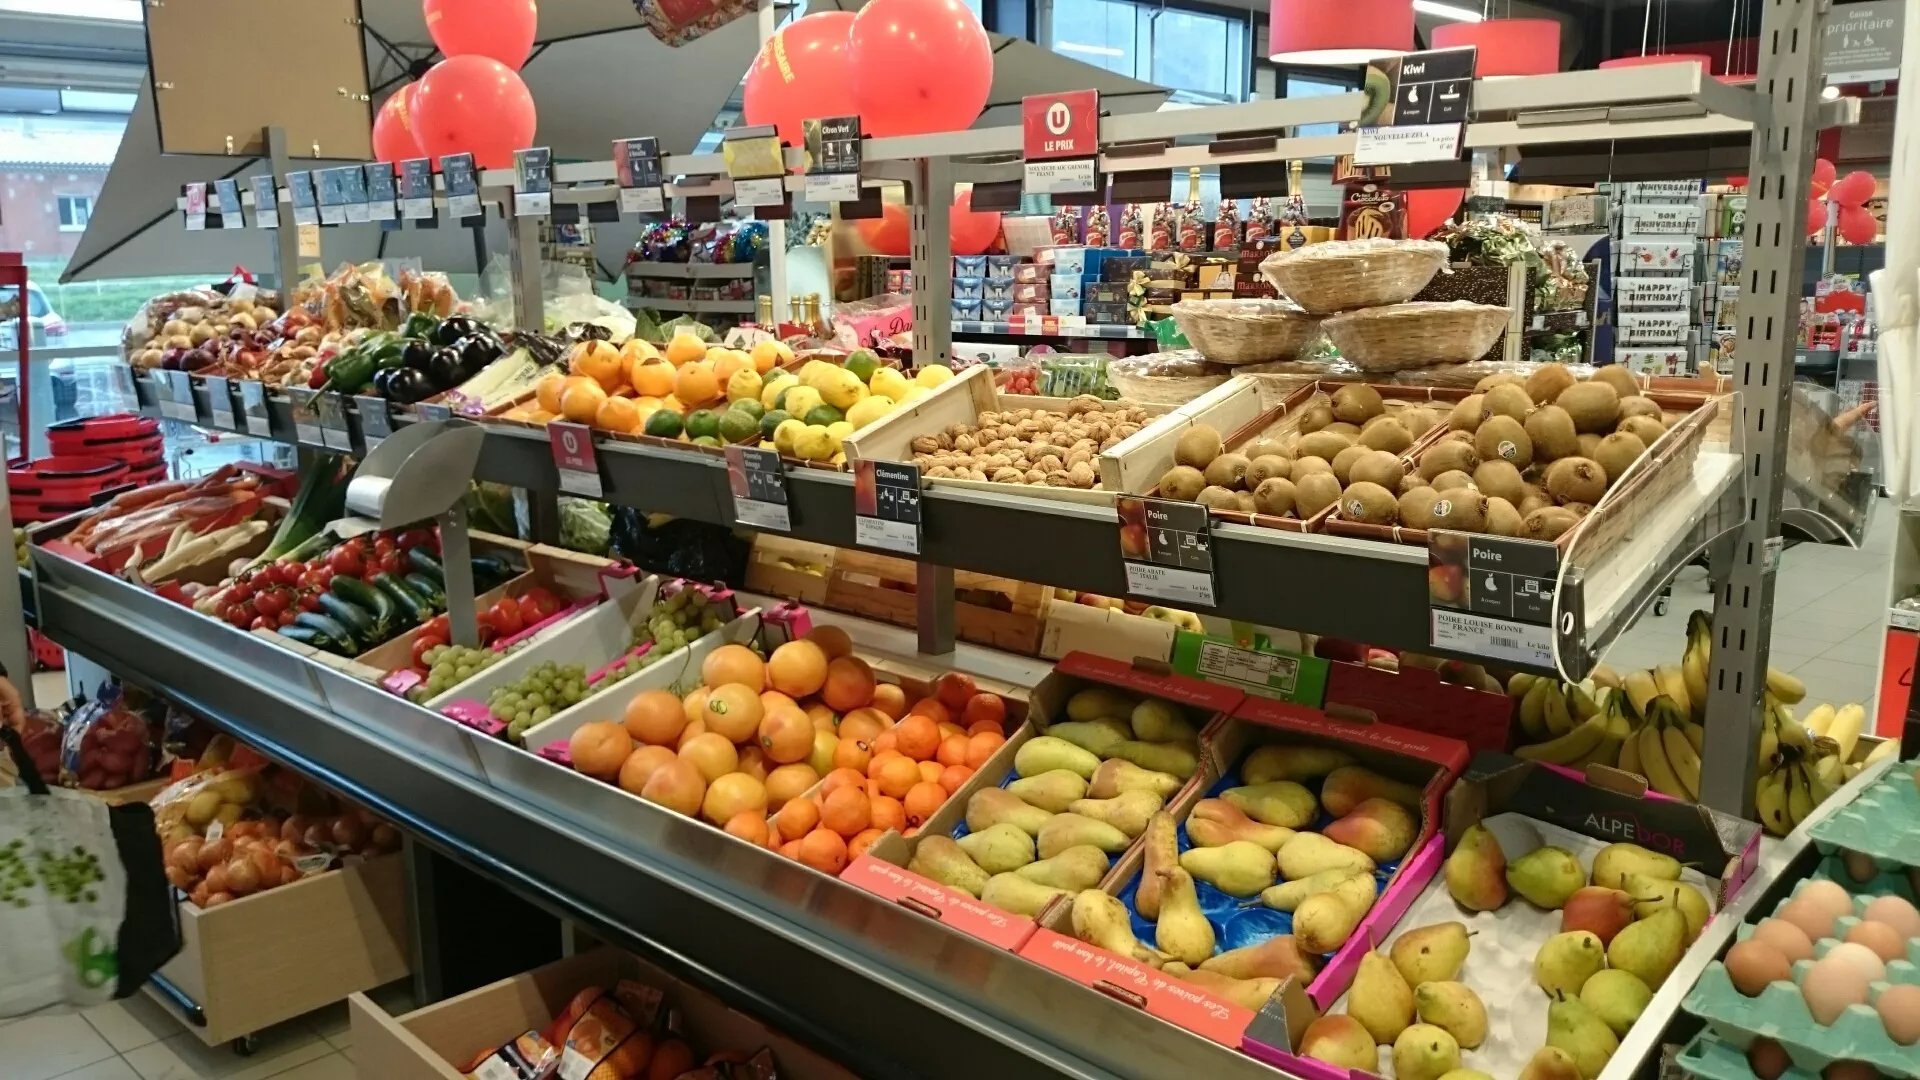 U Tile Supermarket in France, europe | Dairy,Seafood,Coffee,Beer,Fruit & Vegetable,Meat - Country Helper